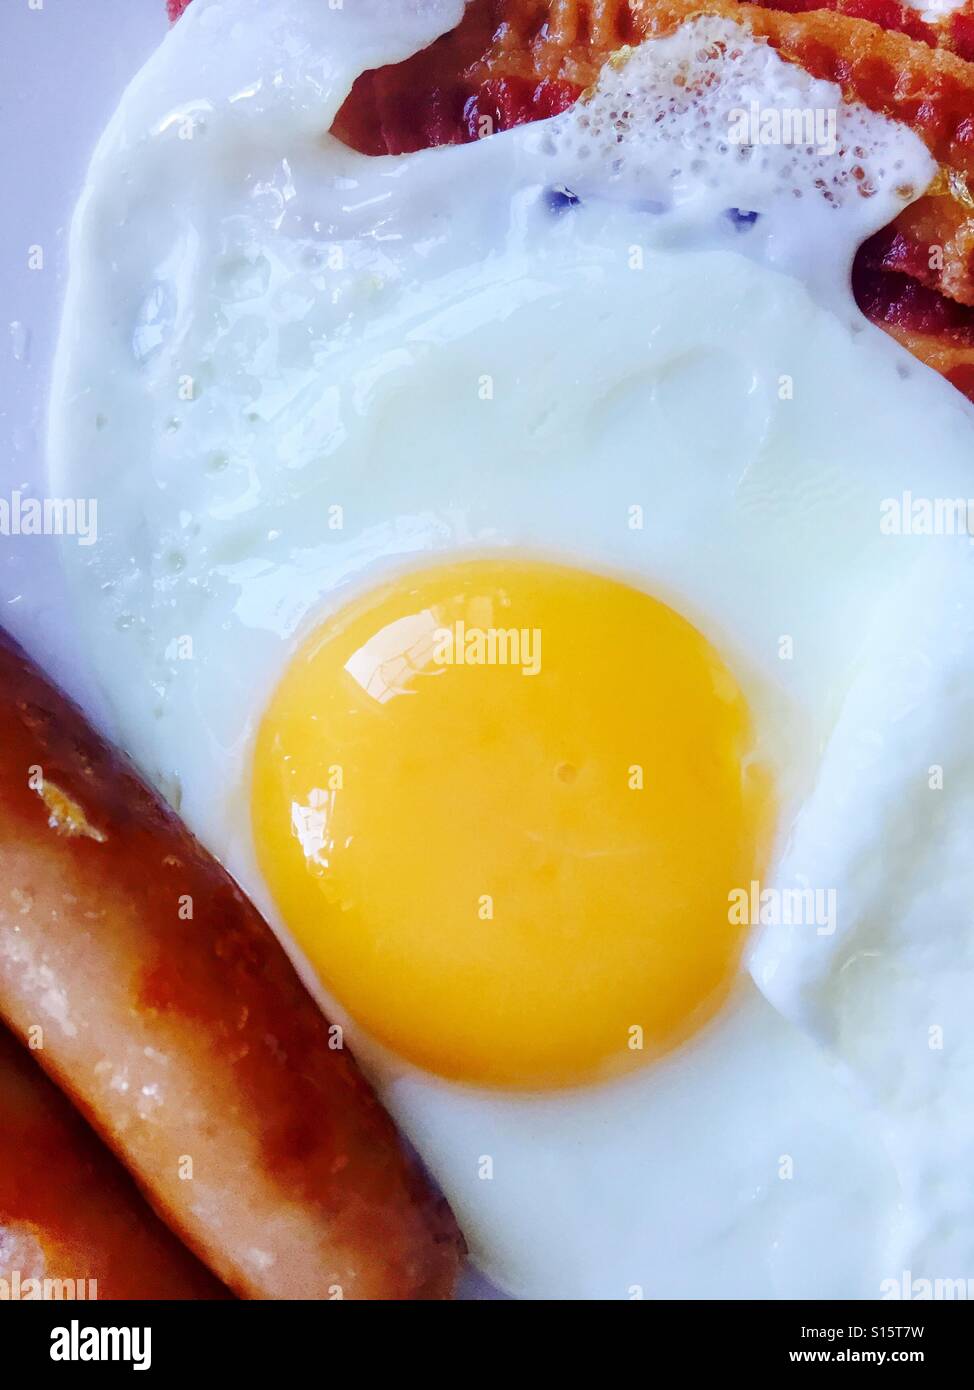 Fried egg breakfast Stock Photo